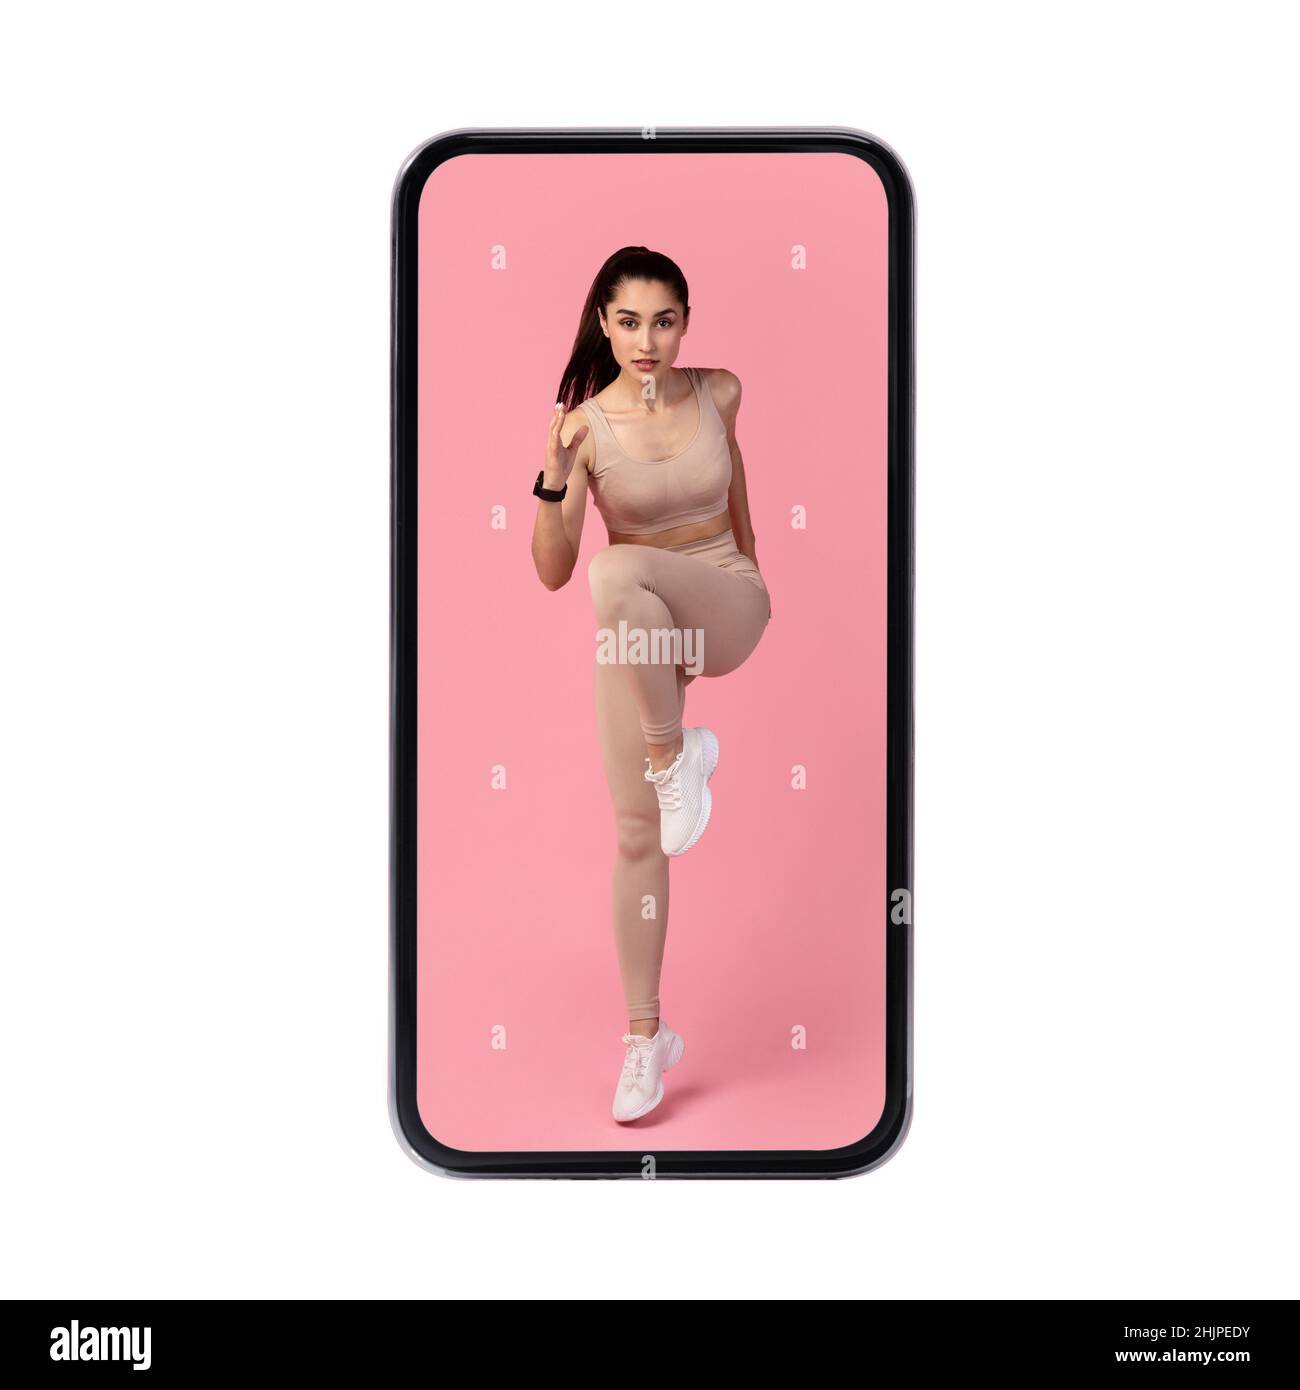 Großes Smartphone Mit Fit Frau Ausübung Auf Dem Bildschirm, Weißer Hintergrund Stockfoto